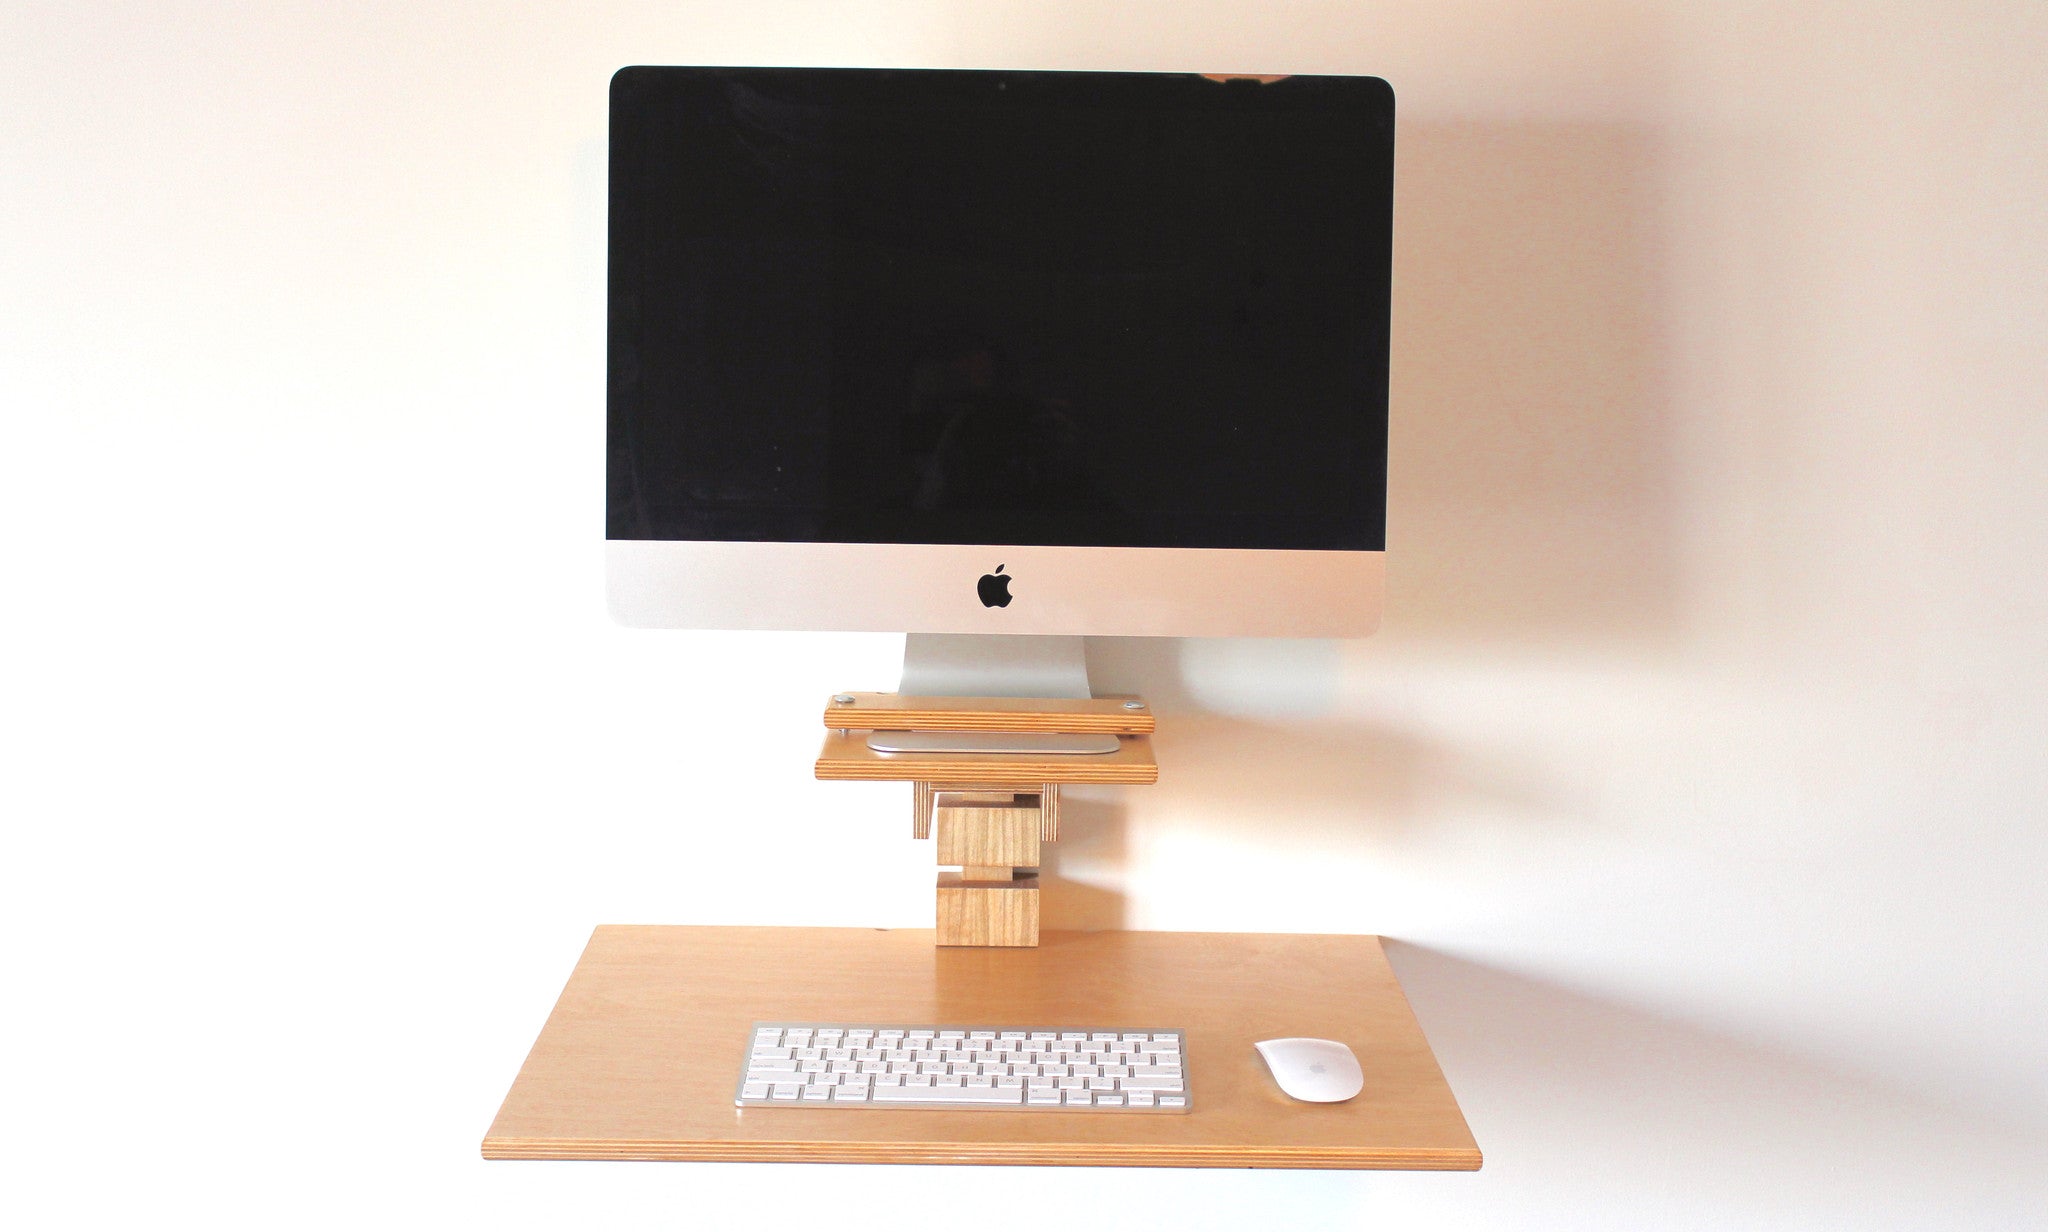 Wall Mounted Standing Desk Imac Model Gereghty Desk Co